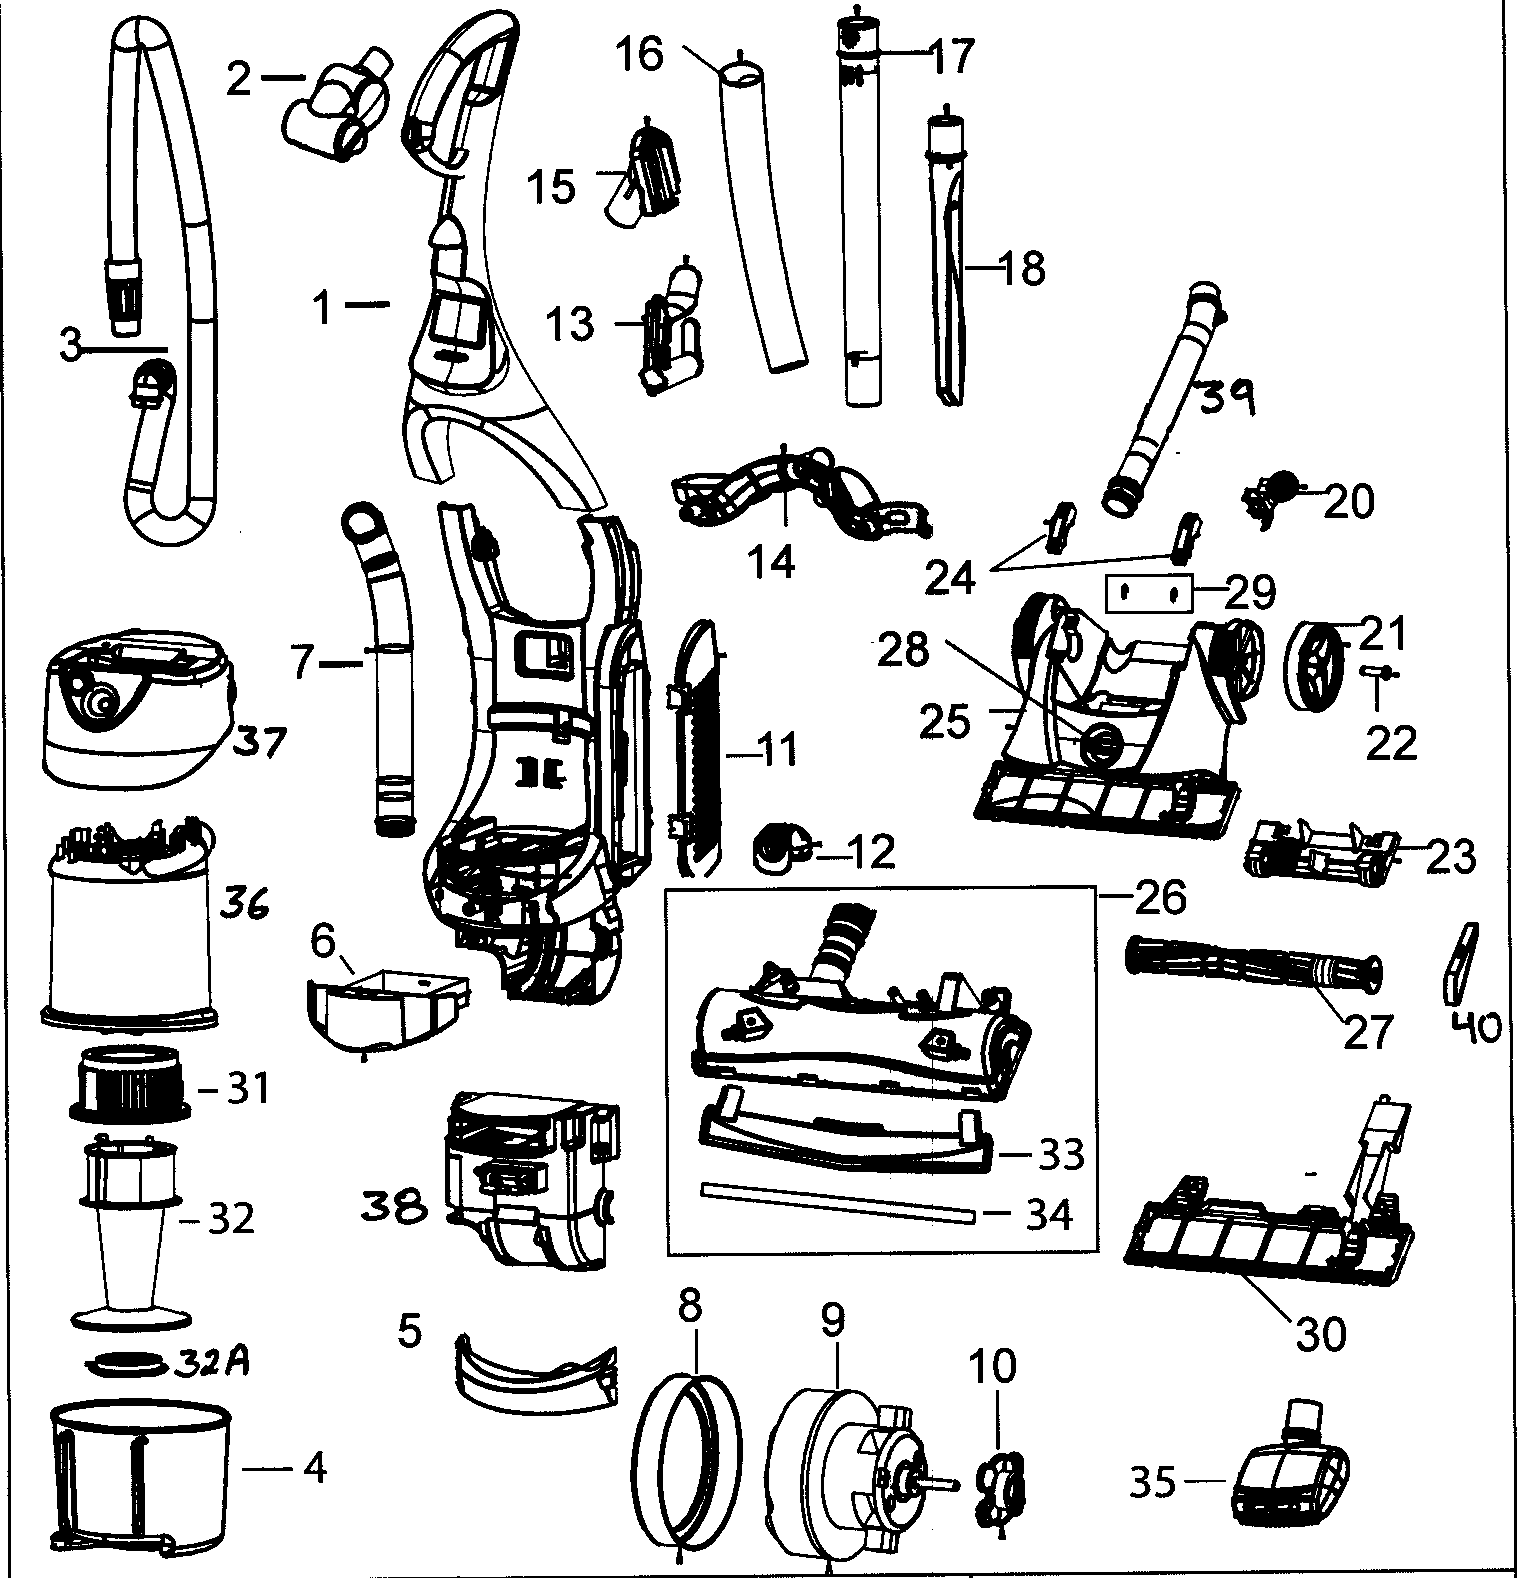 Bissell Vacuum Parts